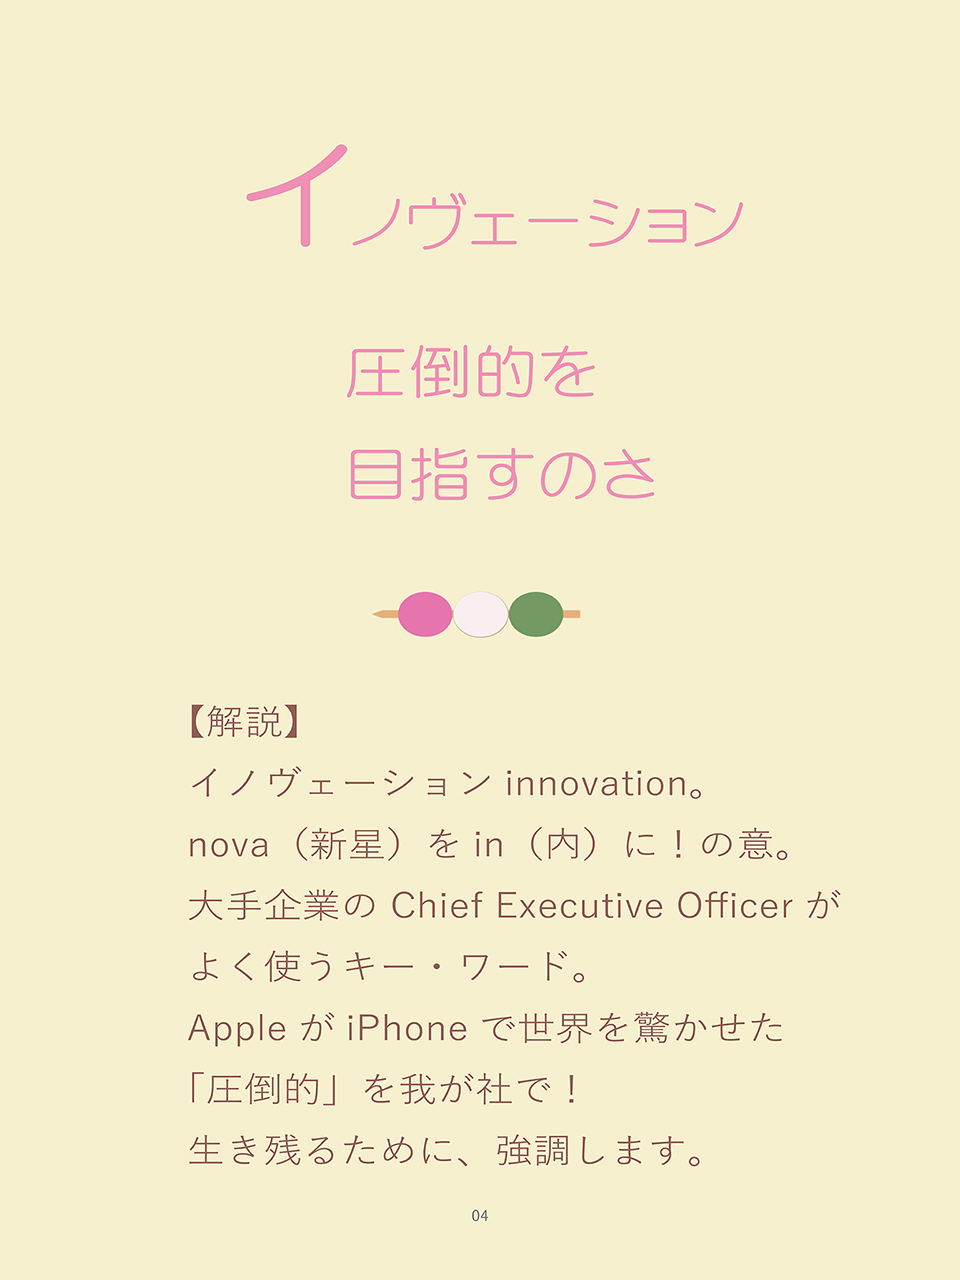 詠み人・矢嶋剛（やじまたけし）の電子書籍『いろはカルタ経営学』に収載された「い」の句、「イノヴェーション、圧倒的を目指すのさ」。句の下に解説。イノヴェーションinnovation。nova（新星）をin（内）に！の意。大手企業の Chief Executive Officerがよく使うキー・ワード。AppleがiPhoneで世界を驚かせた「圧倒的」を我が社で！生き残るために、強調します。